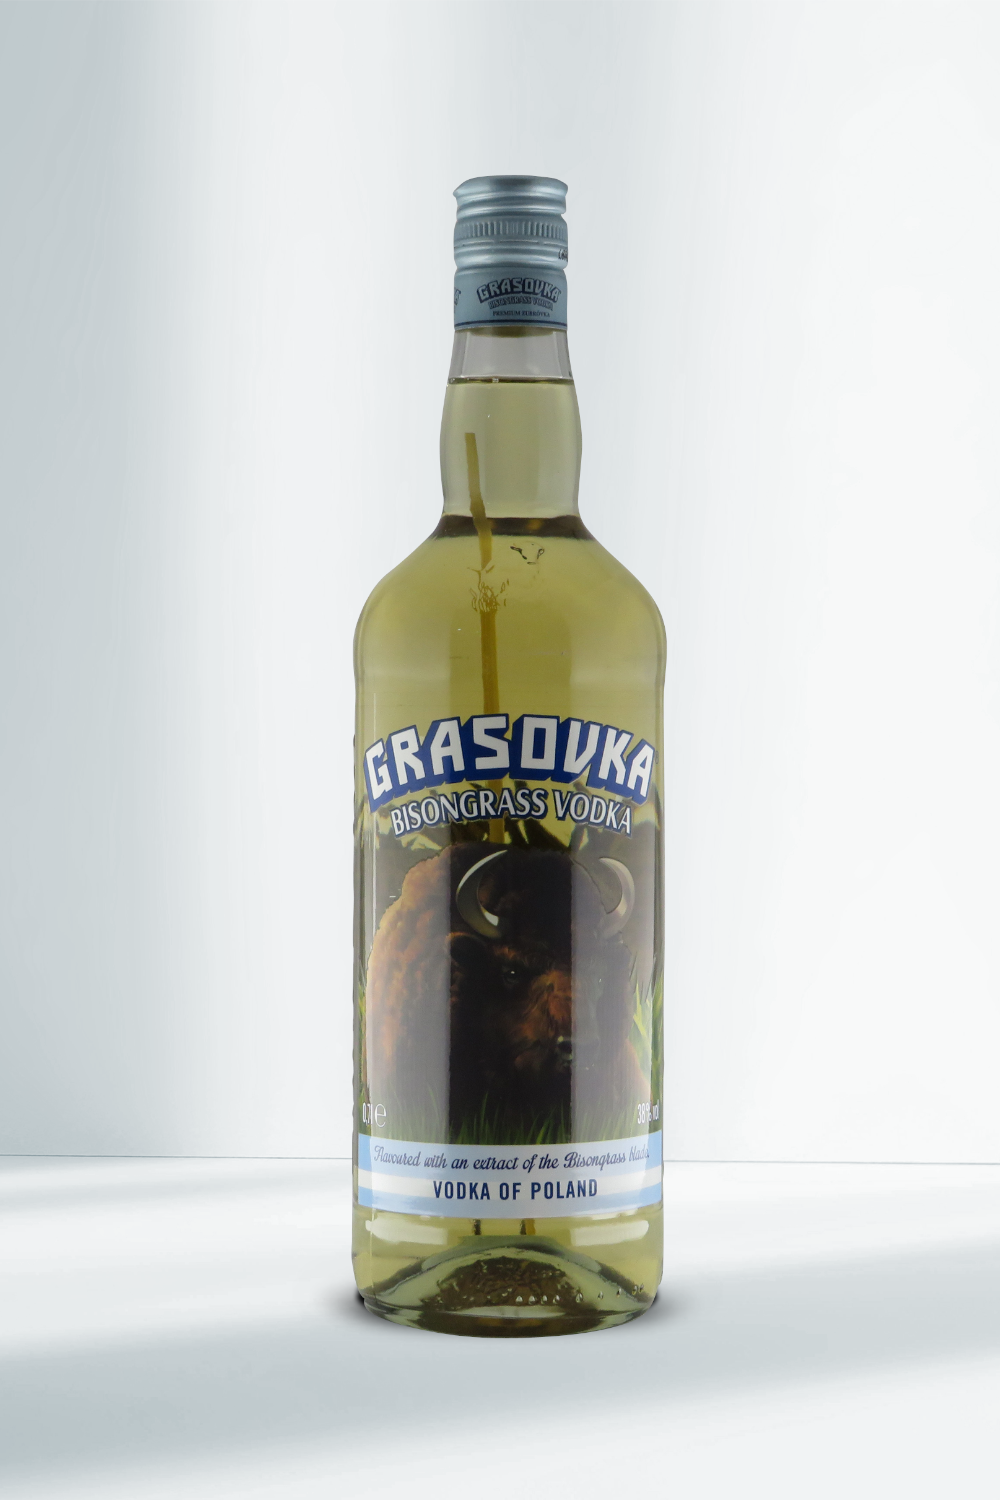 Grasovka Bisongrass Vodka 38% 0,7l I Beverage-Shop | Vodka